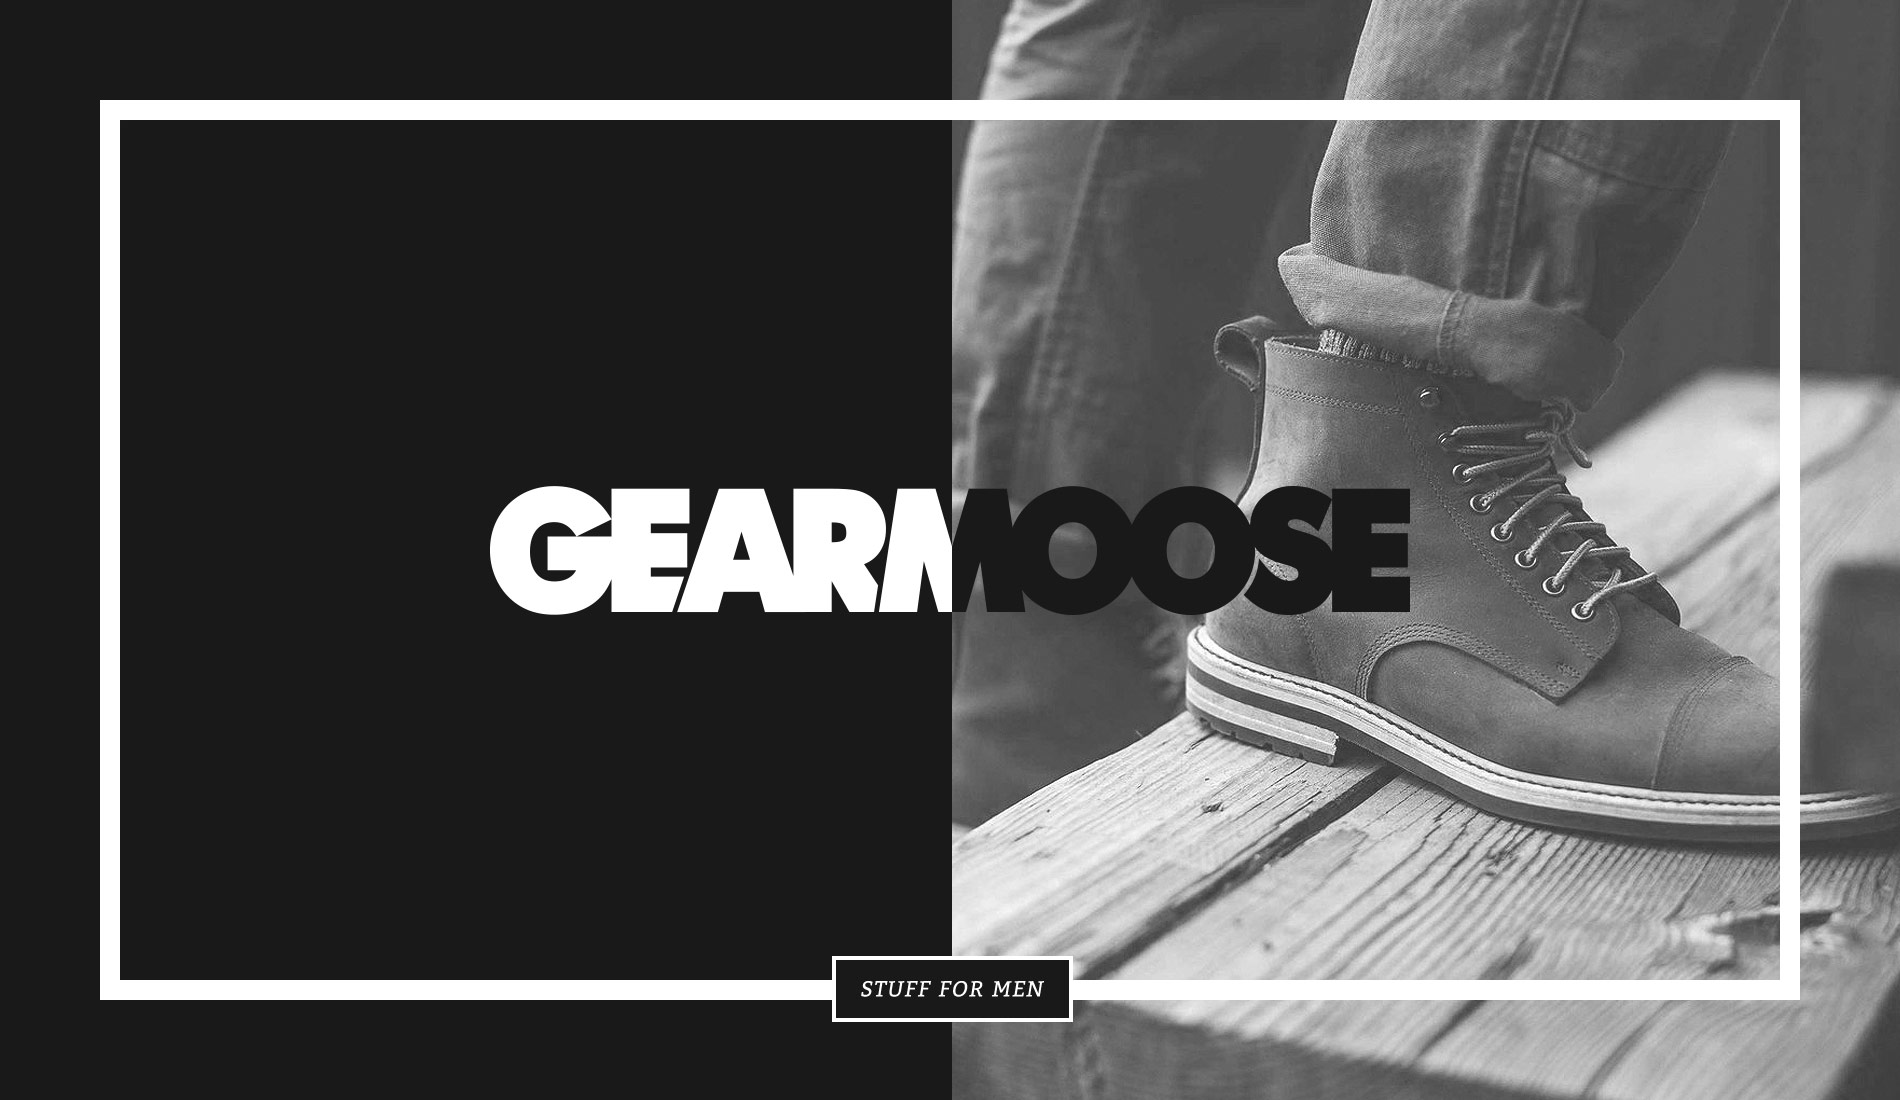 GearMoose online magazine website designed by Fhoke